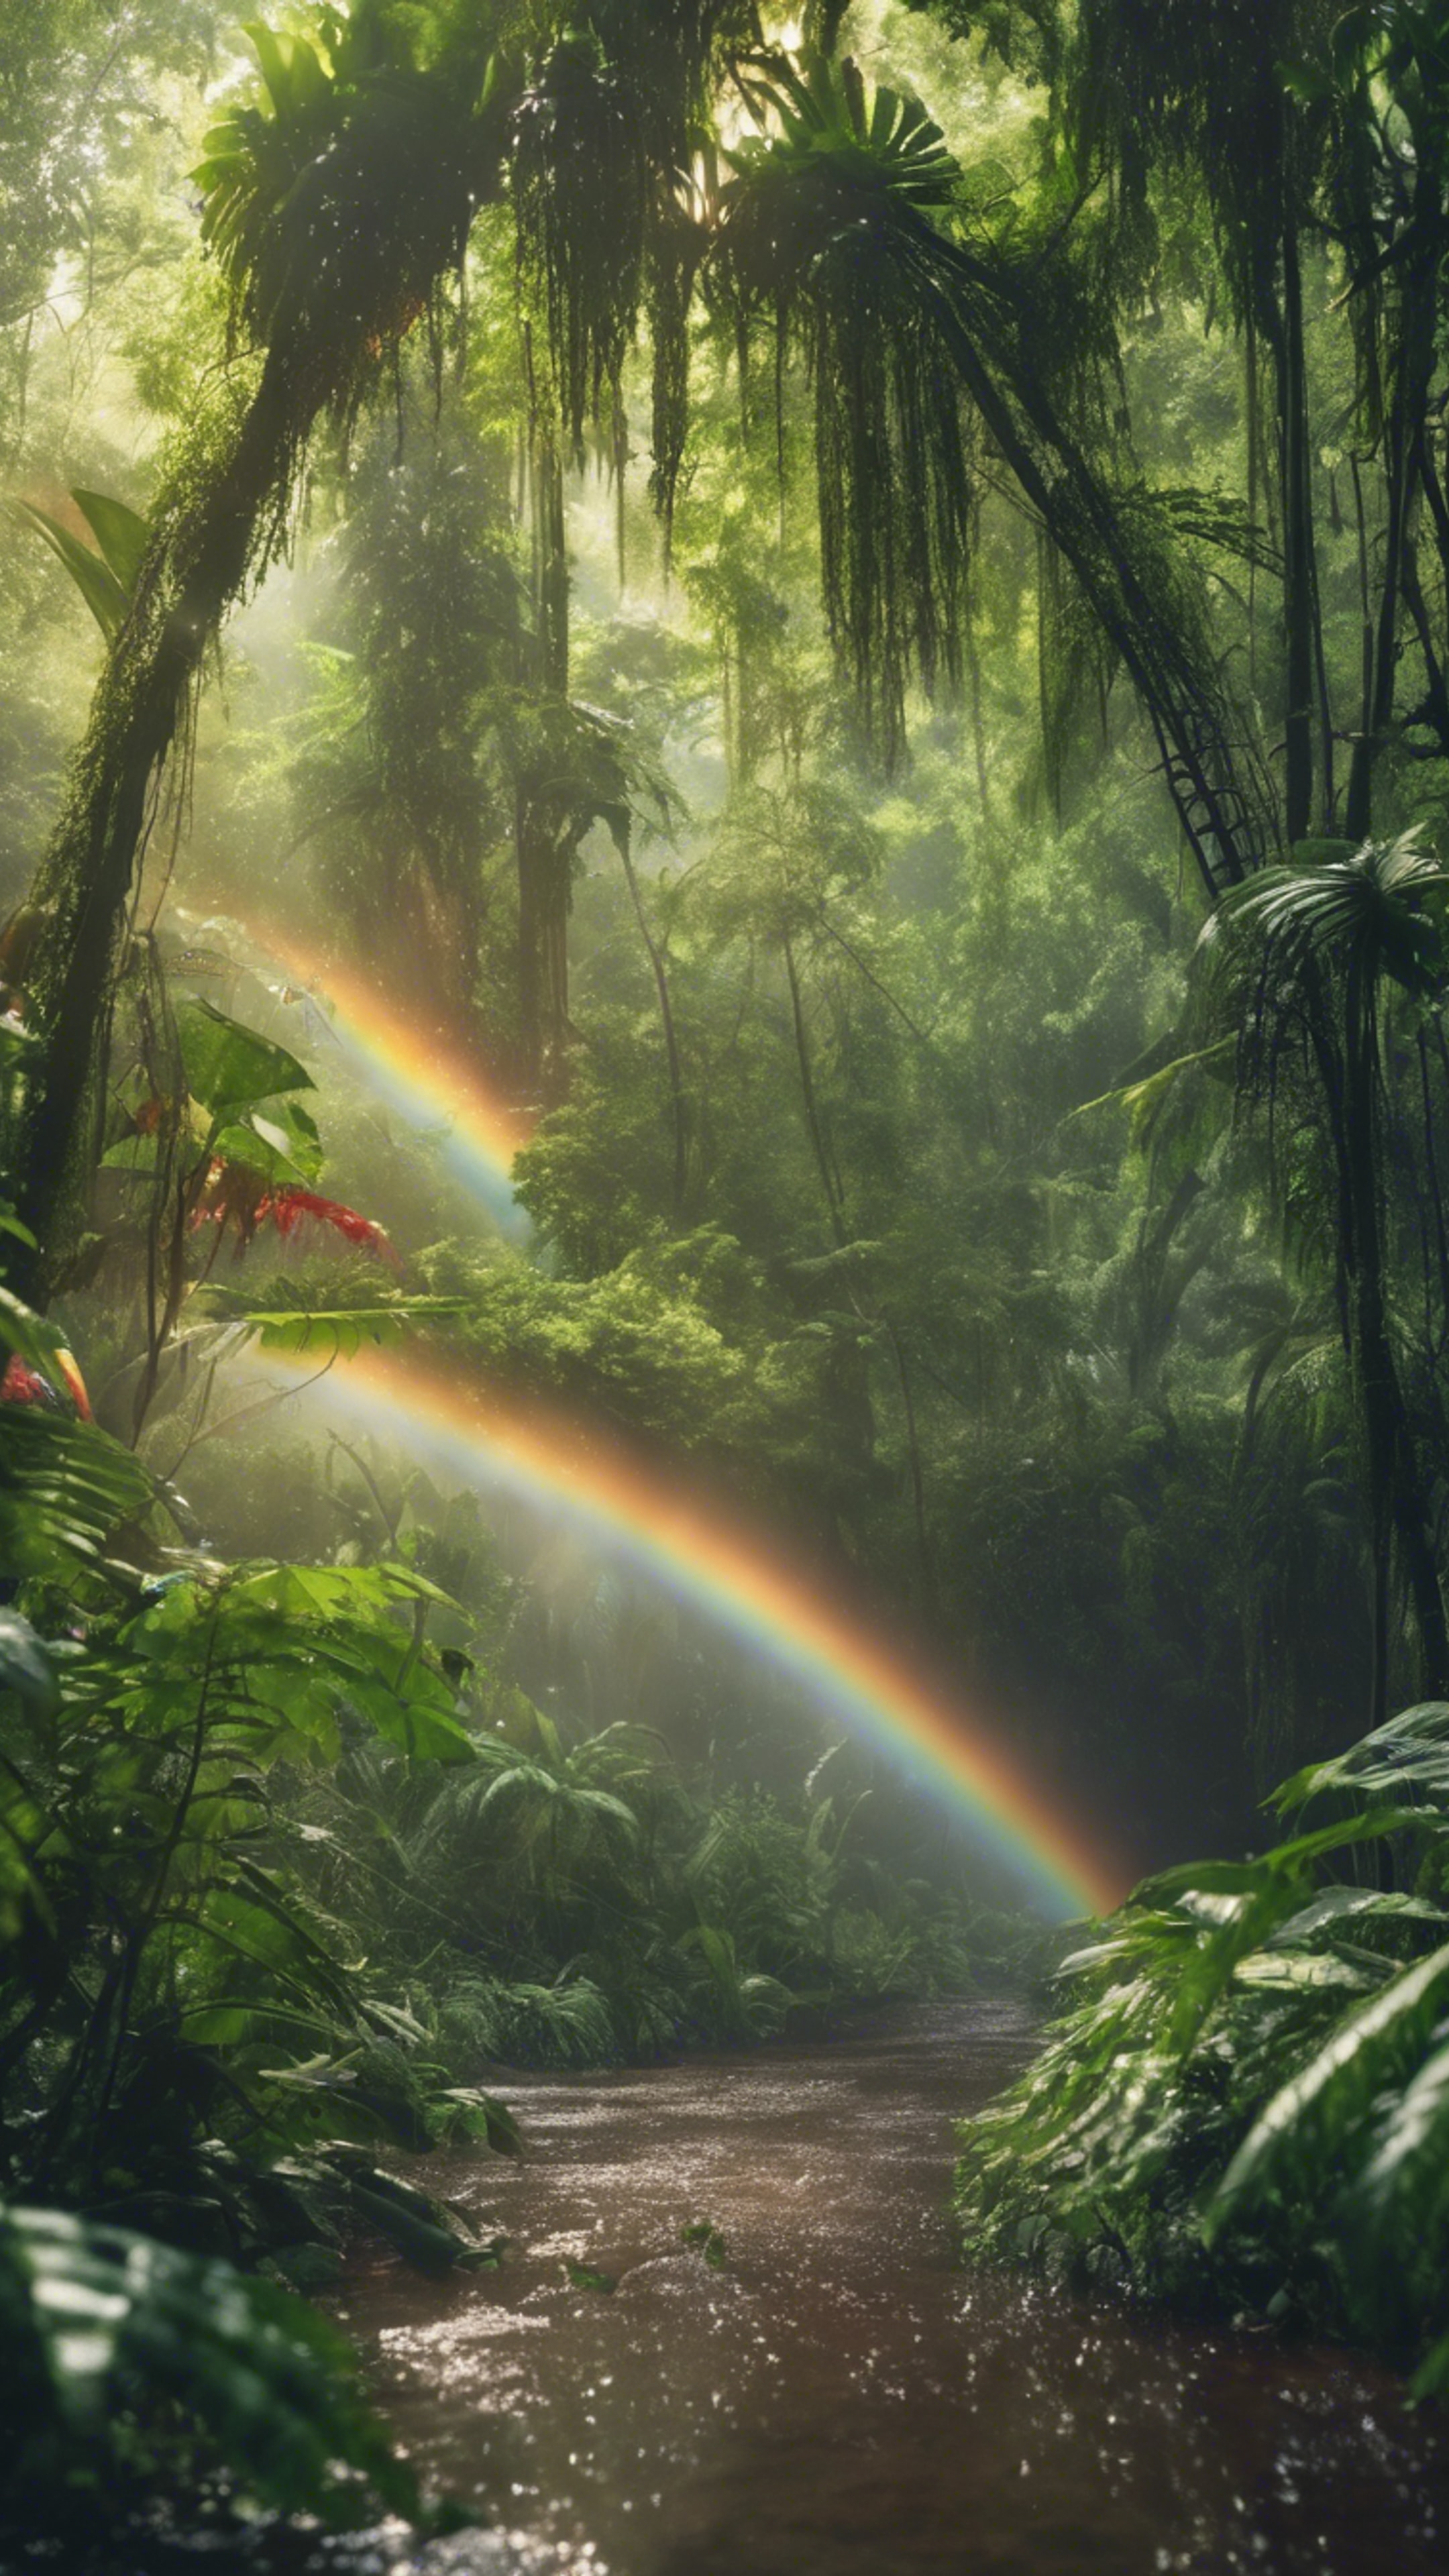 A lush, green rainforest glistening under a rainbow after a summer shower. Tapeta[0e0a5e65f97649b38163]